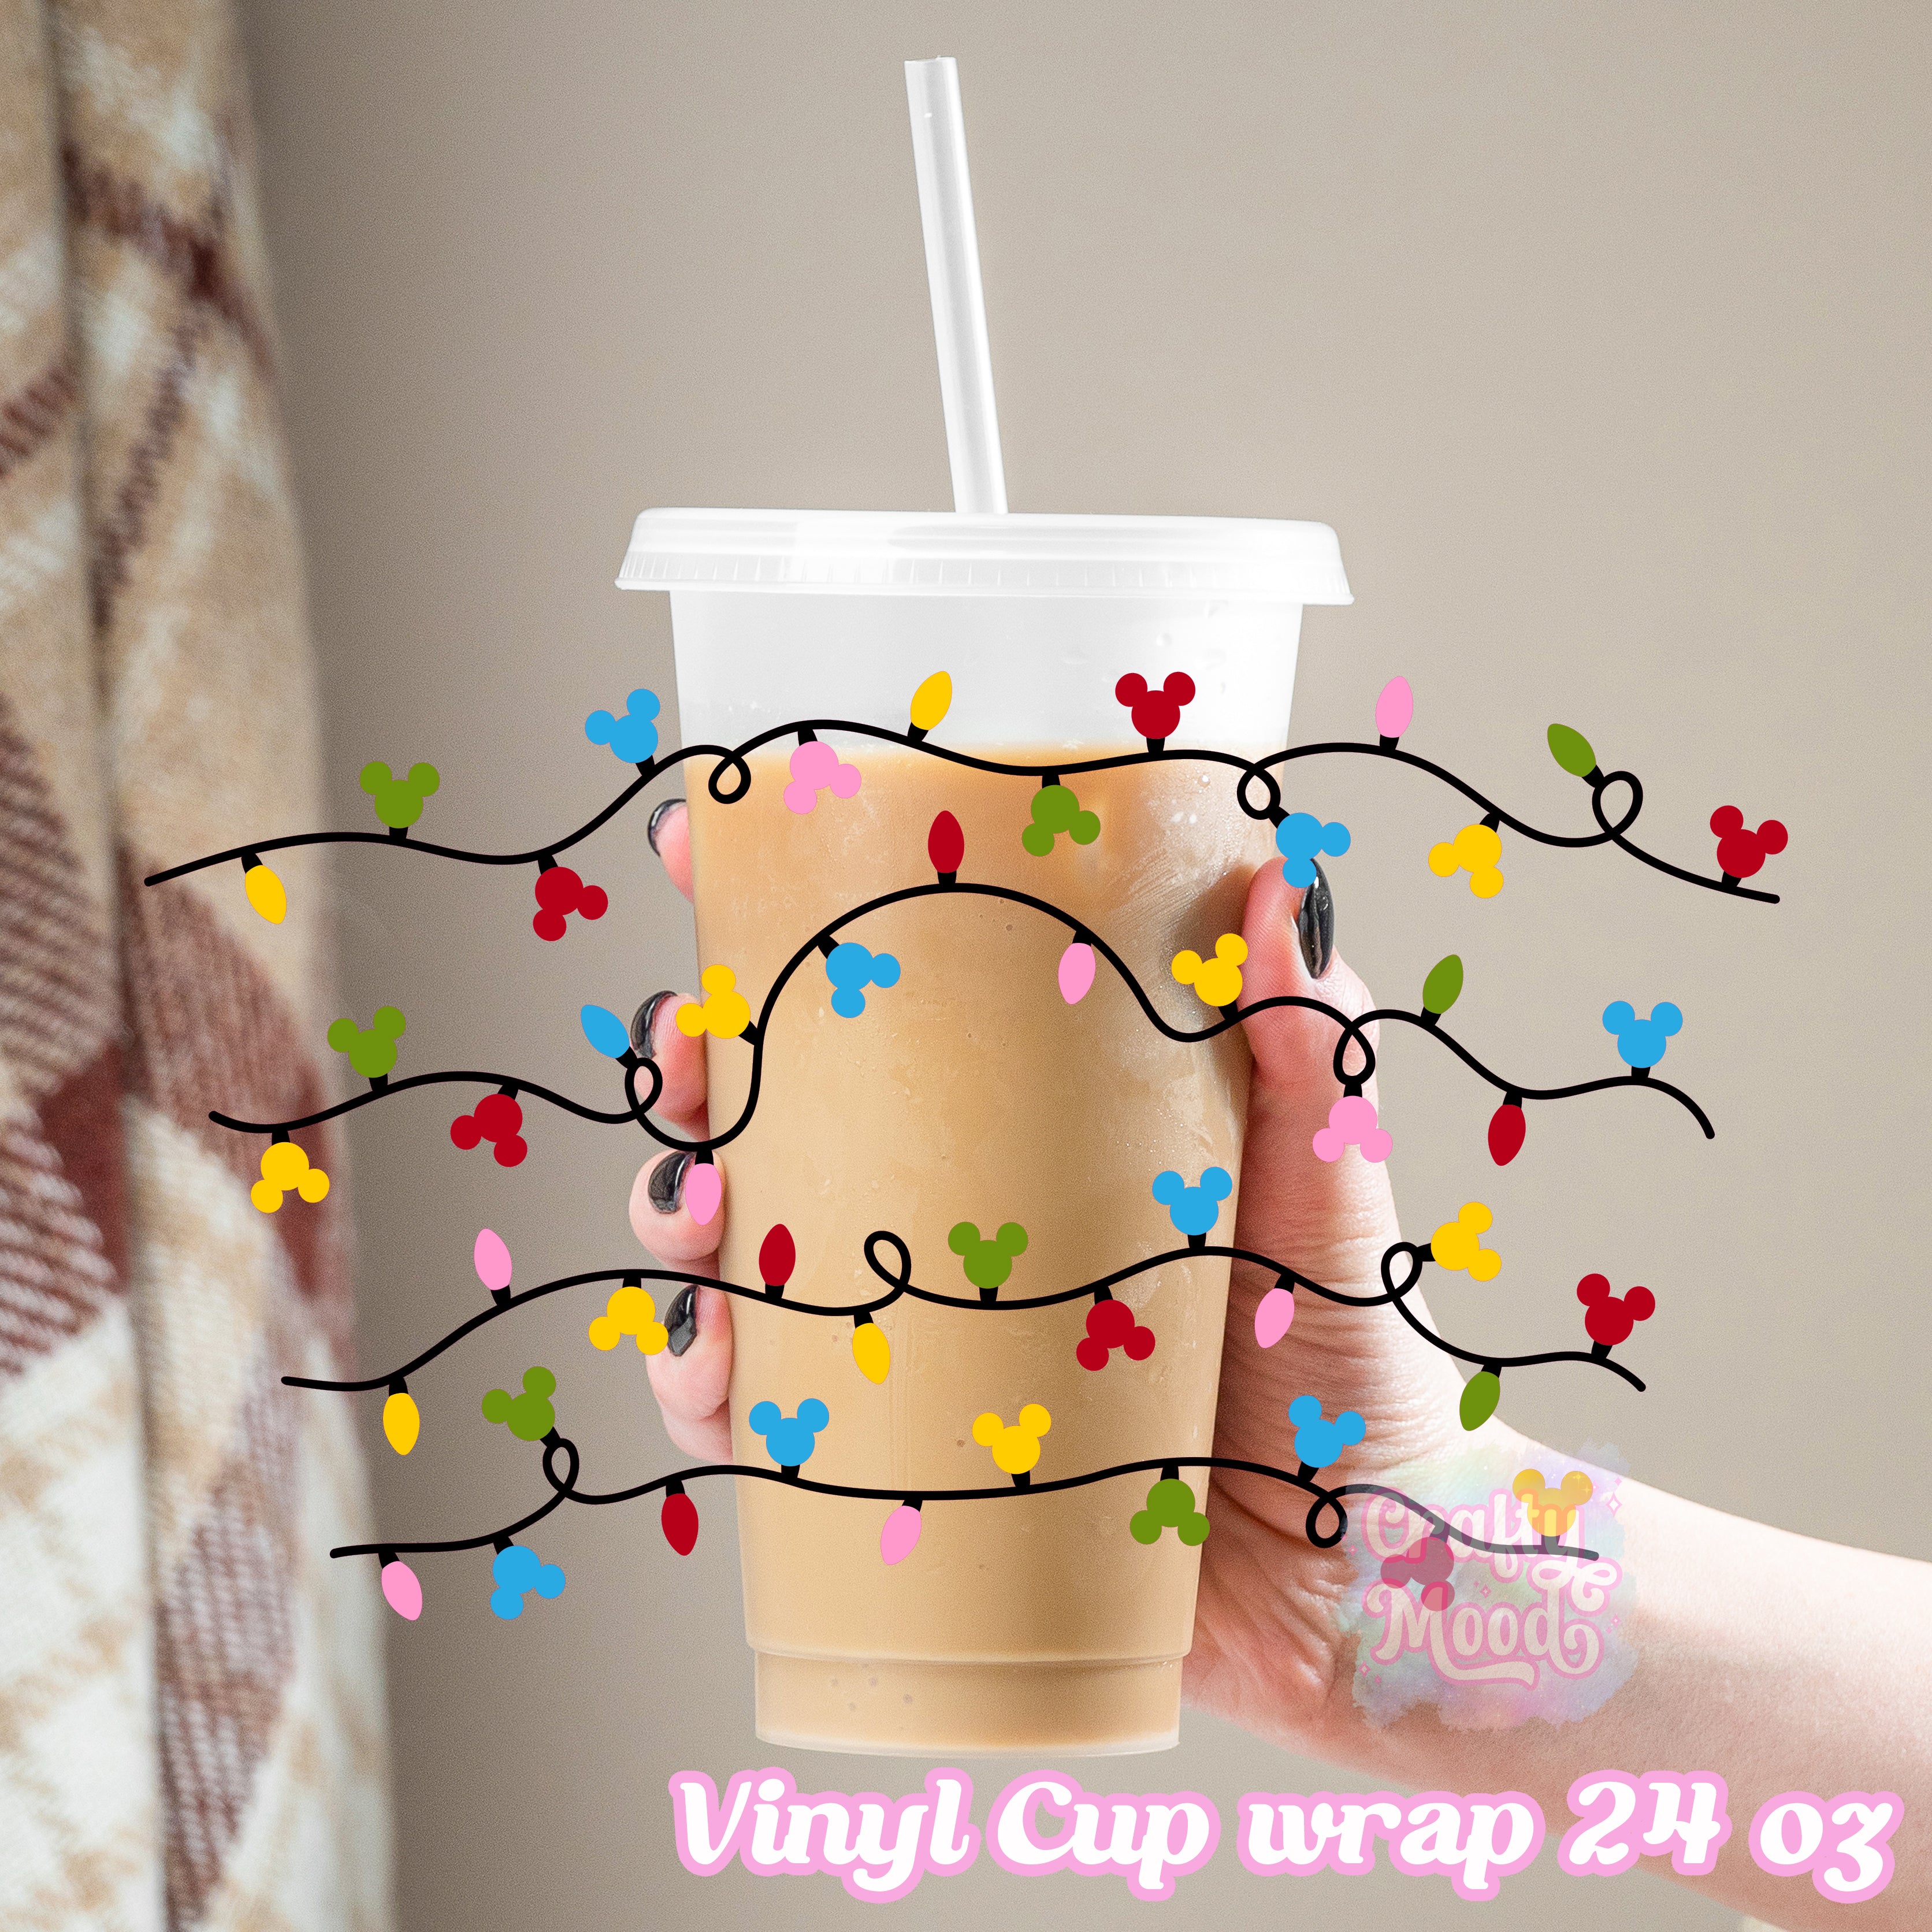 Christmas lights 24 oz Cold cup wrap Tumbler (1659558)